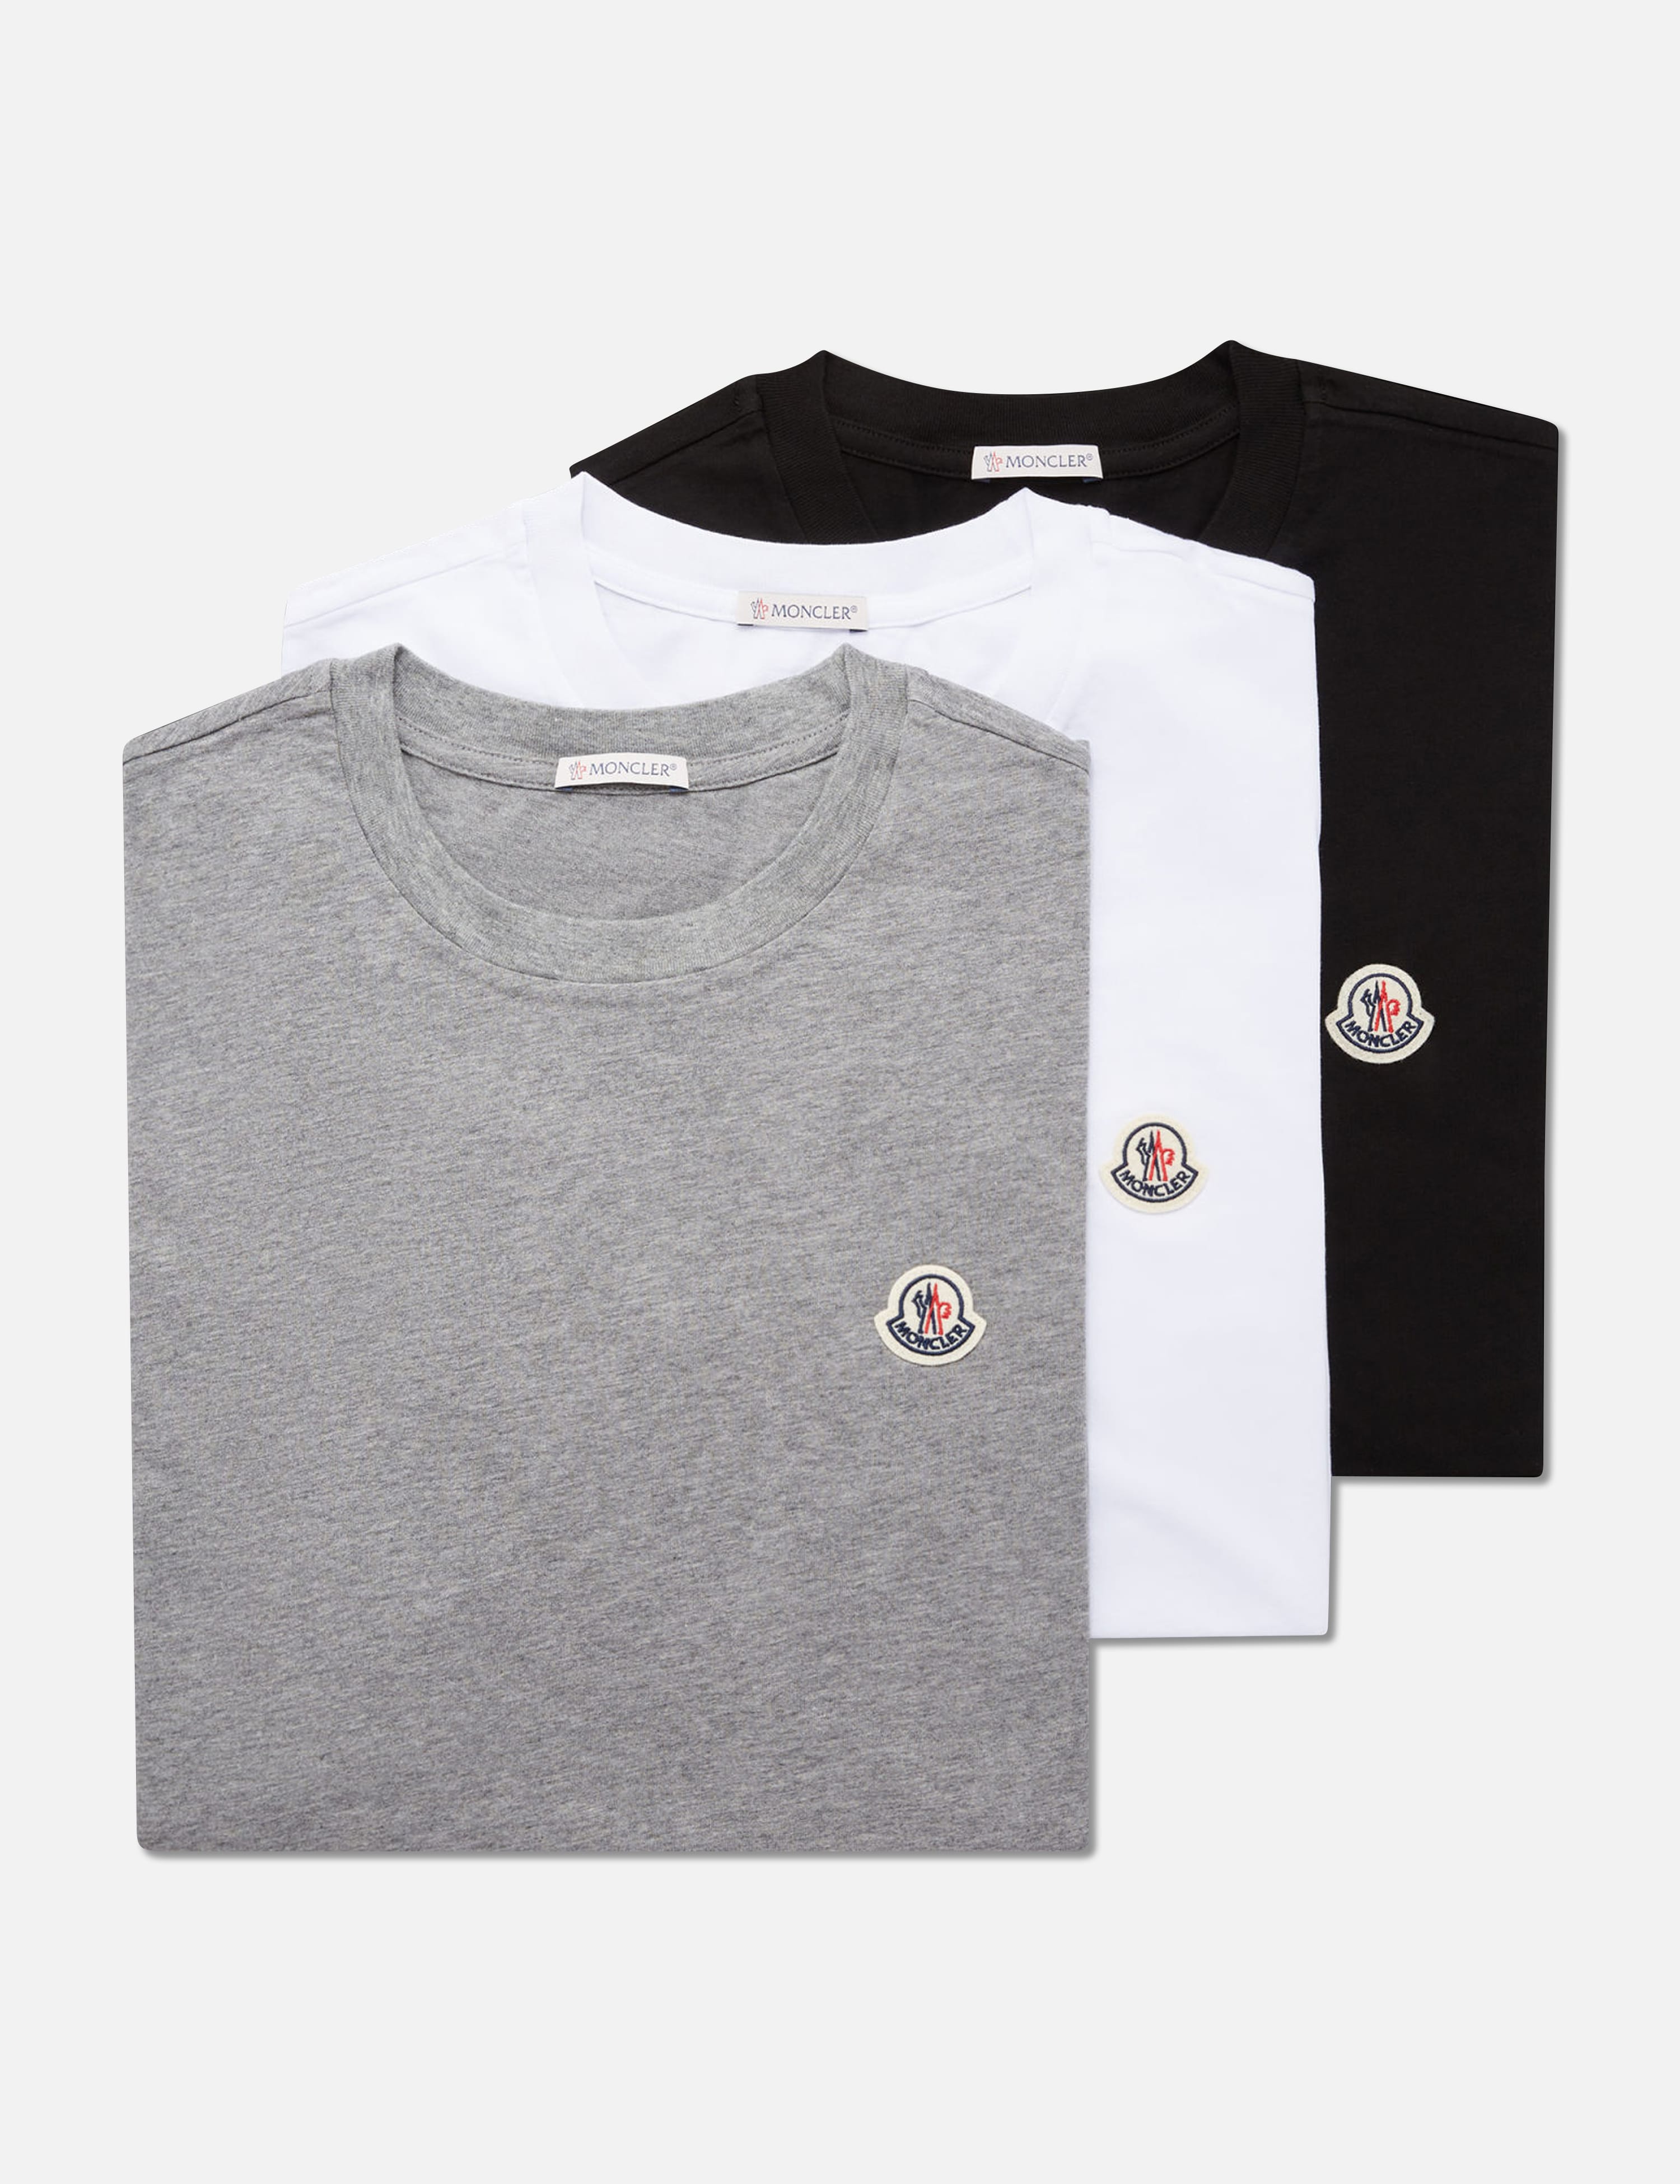 Moncler   モンクレール ロゴ Tシャツ3枚入り   HBX   ハイプ